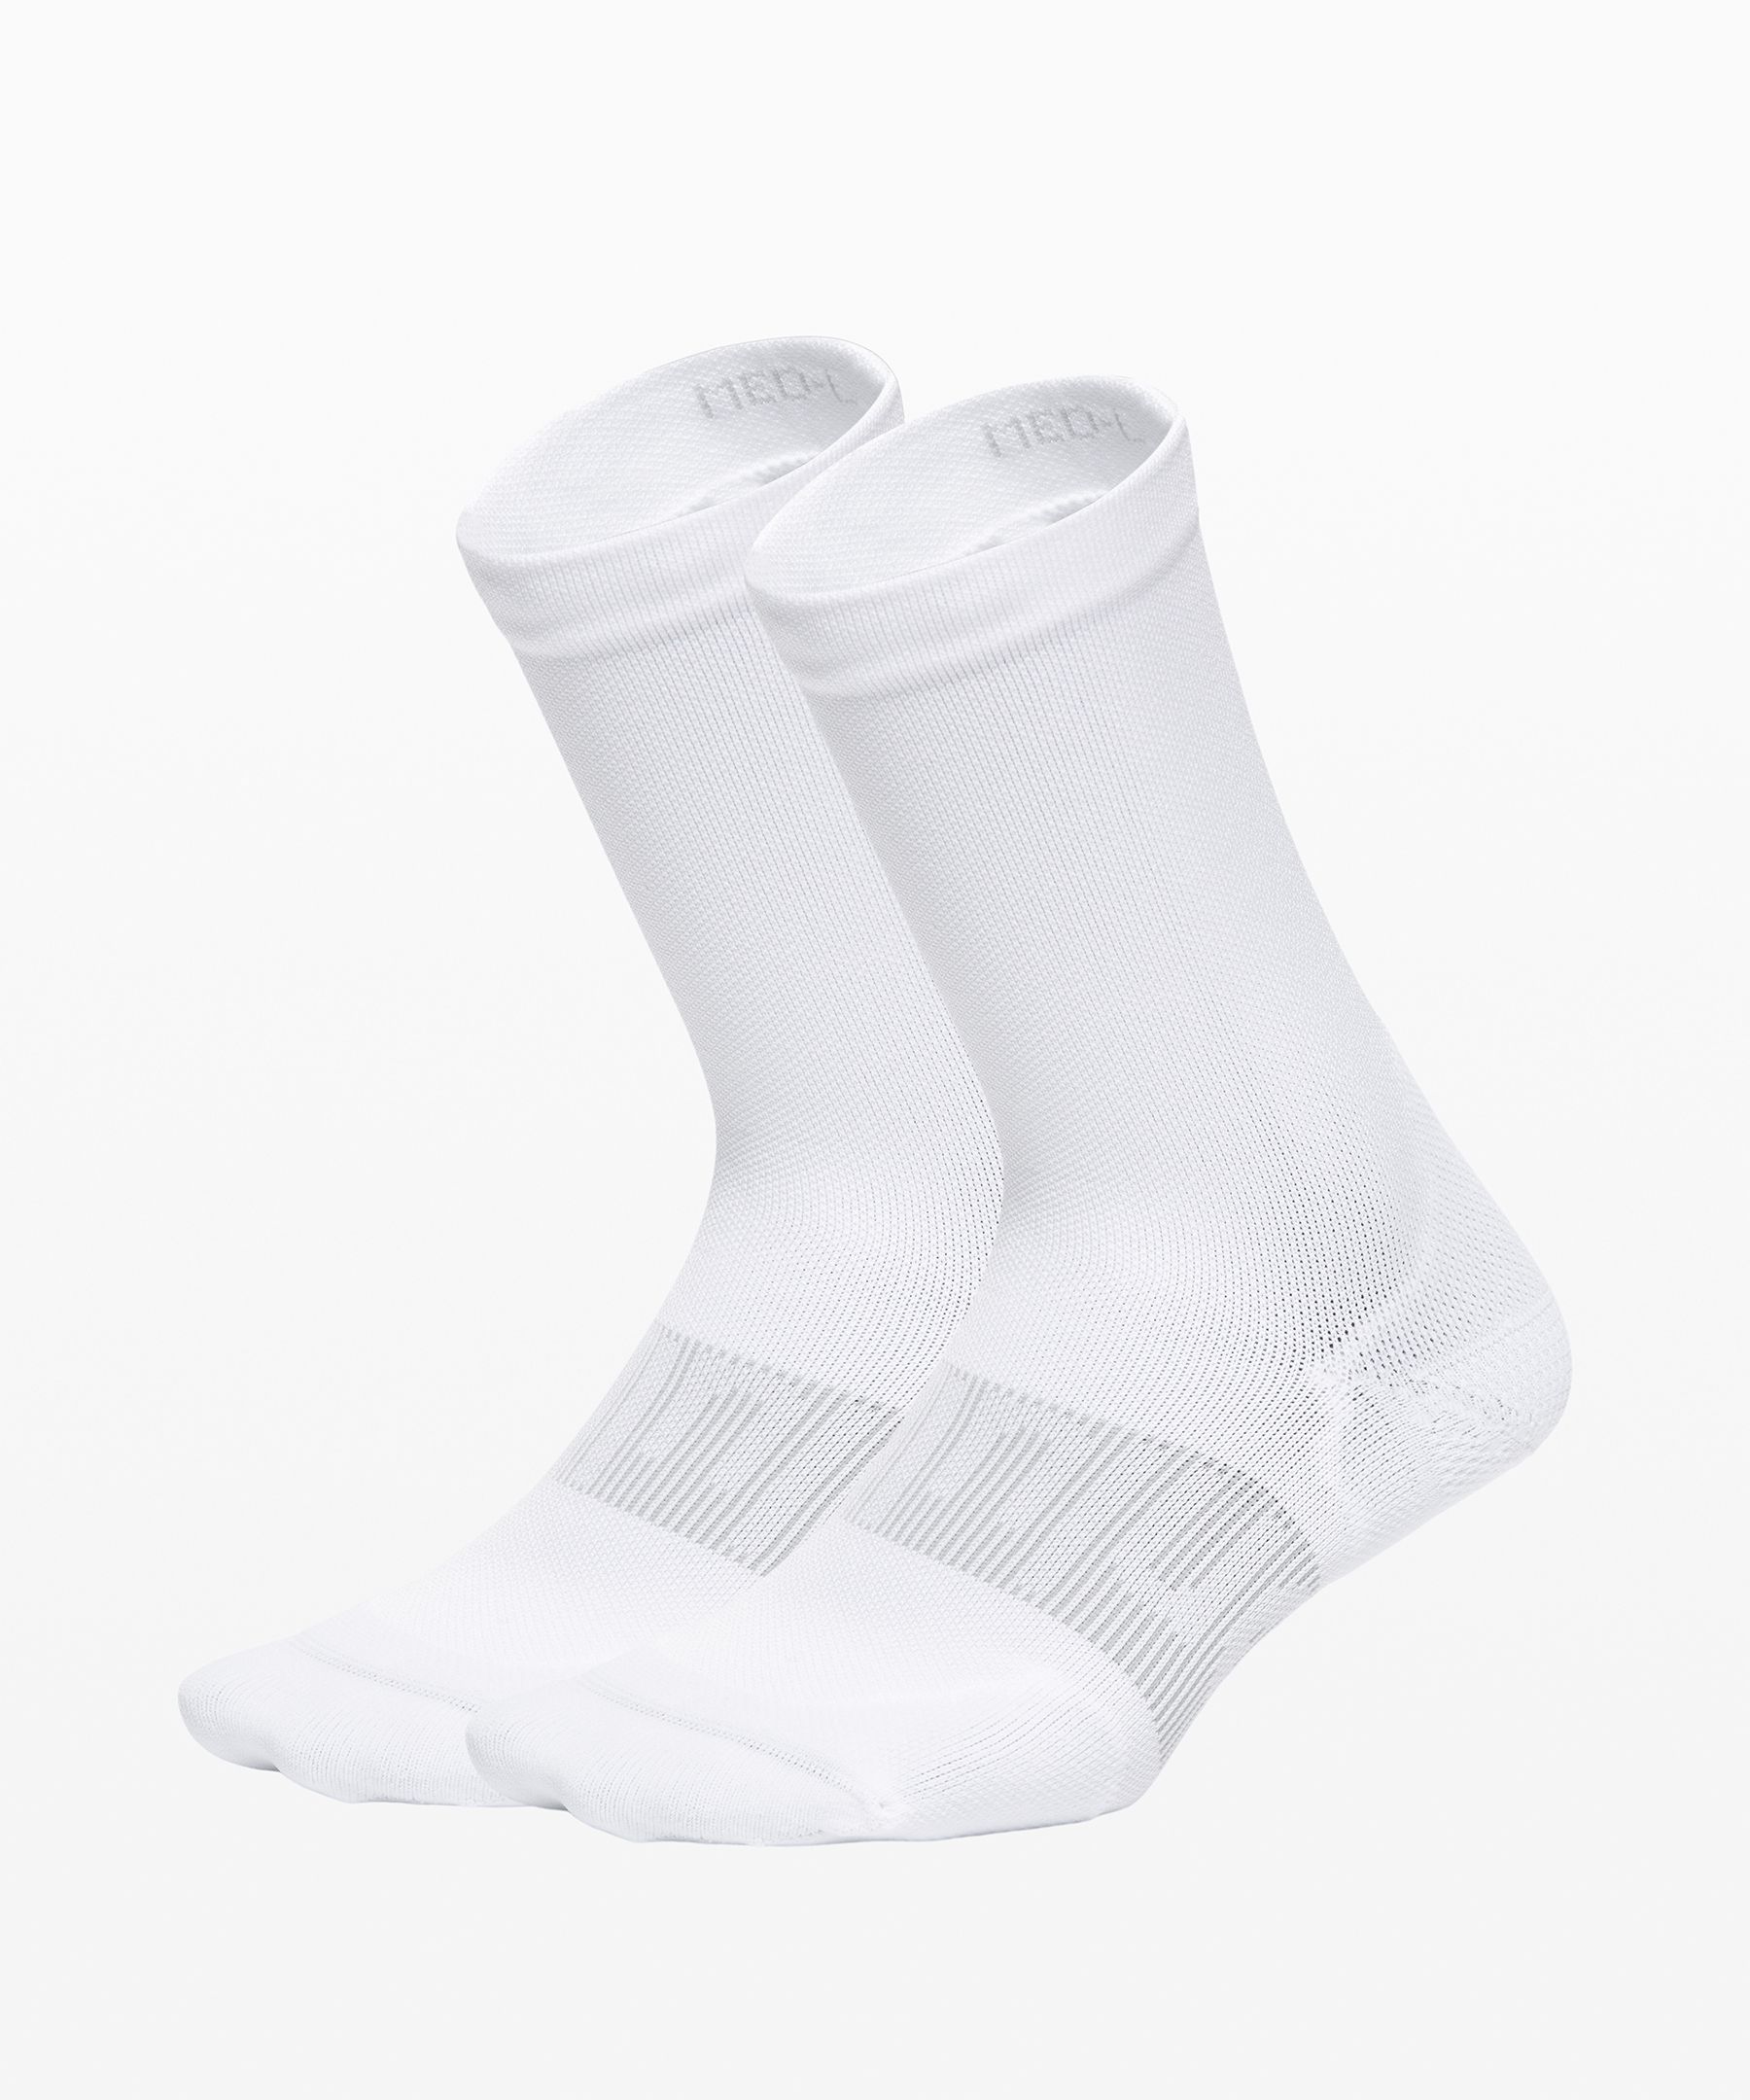 Lululemon Power Stride Crew Socks 2 Pack In White